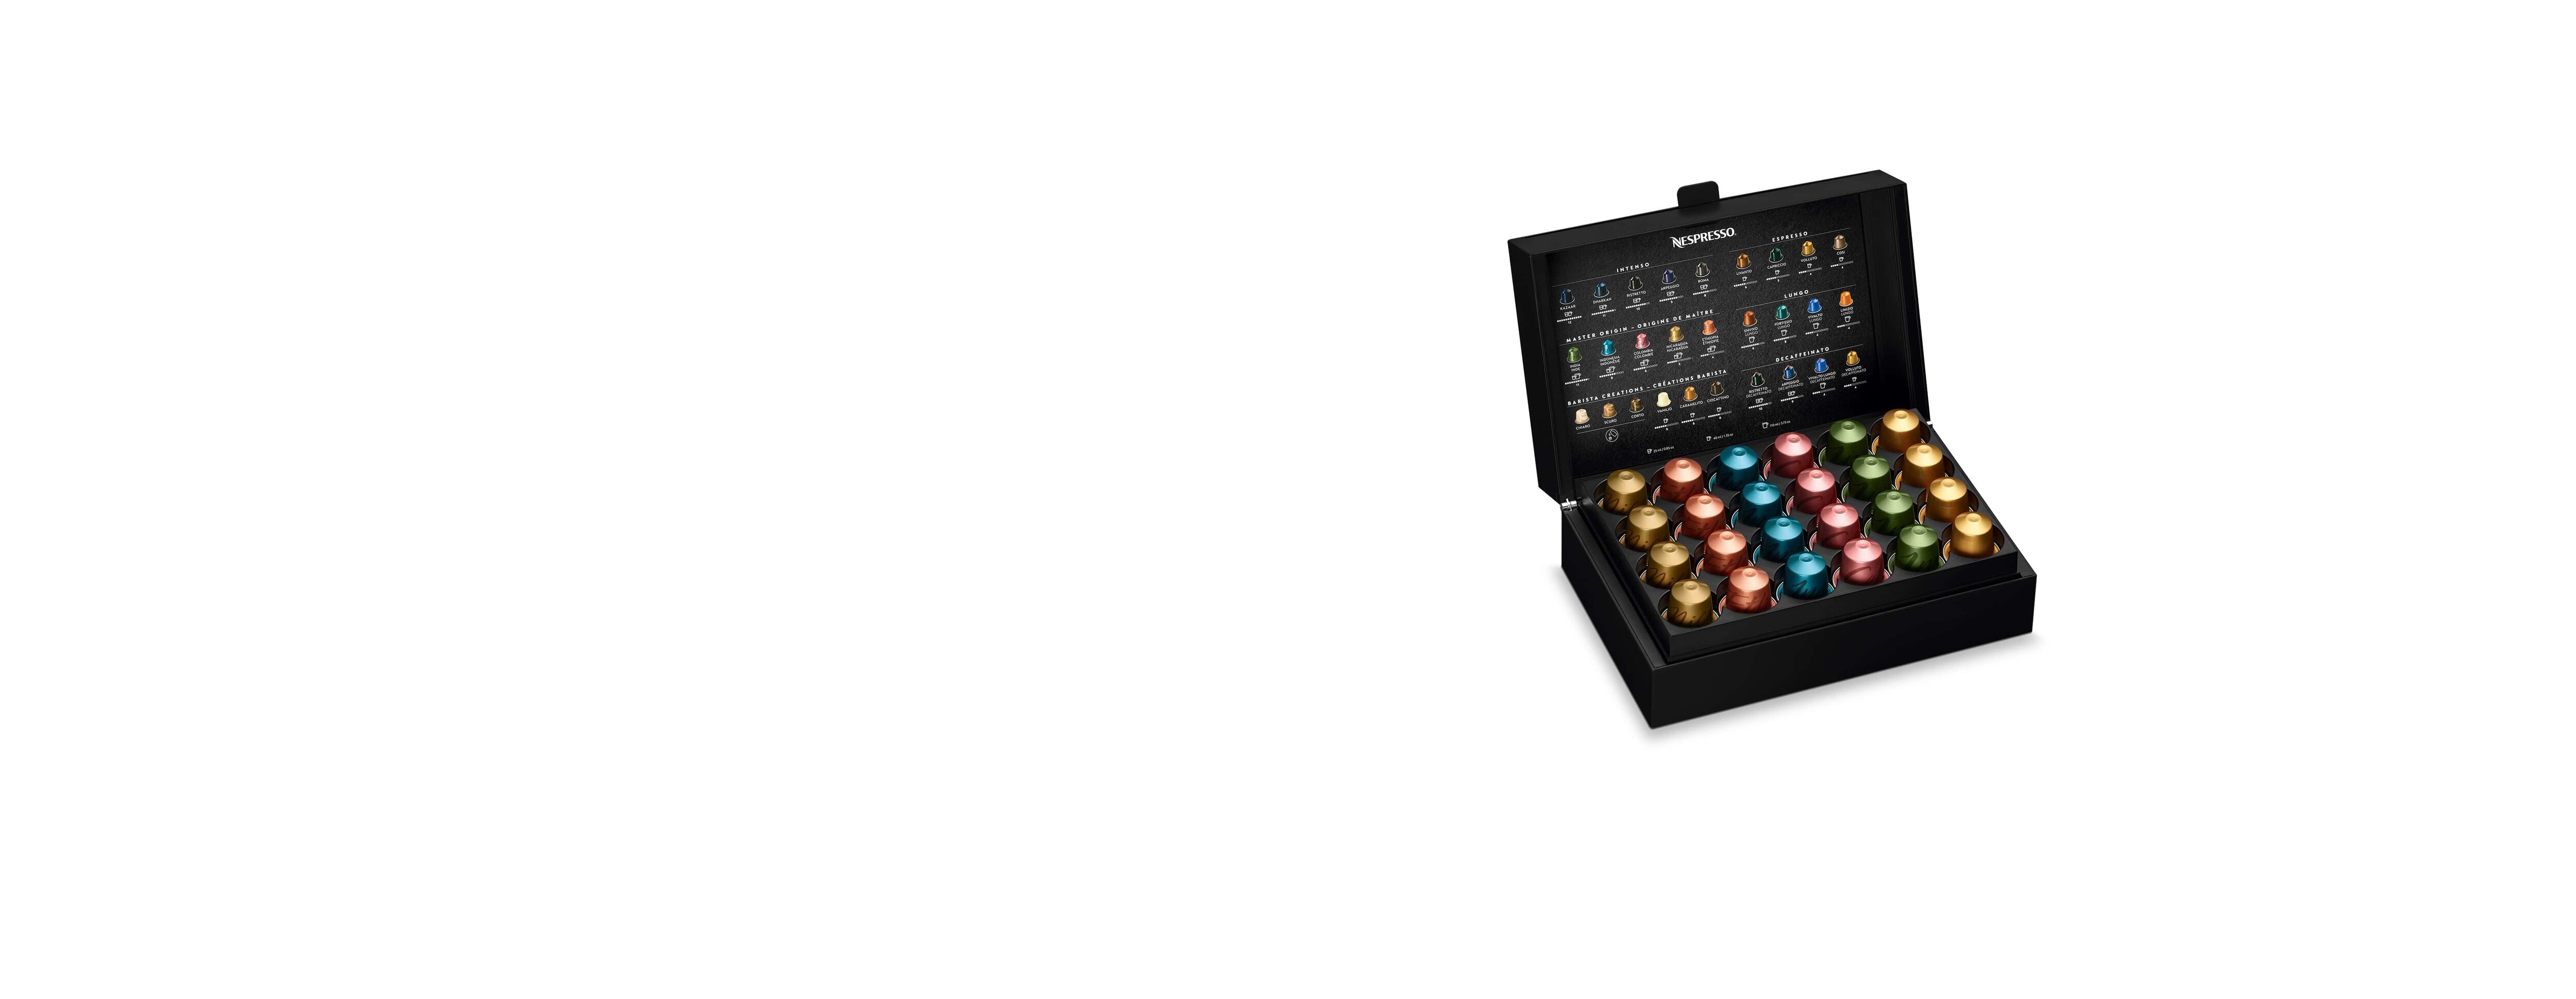 Coffret cadeau 80 capsules compatibles machine Nespresso®* Bonifieur